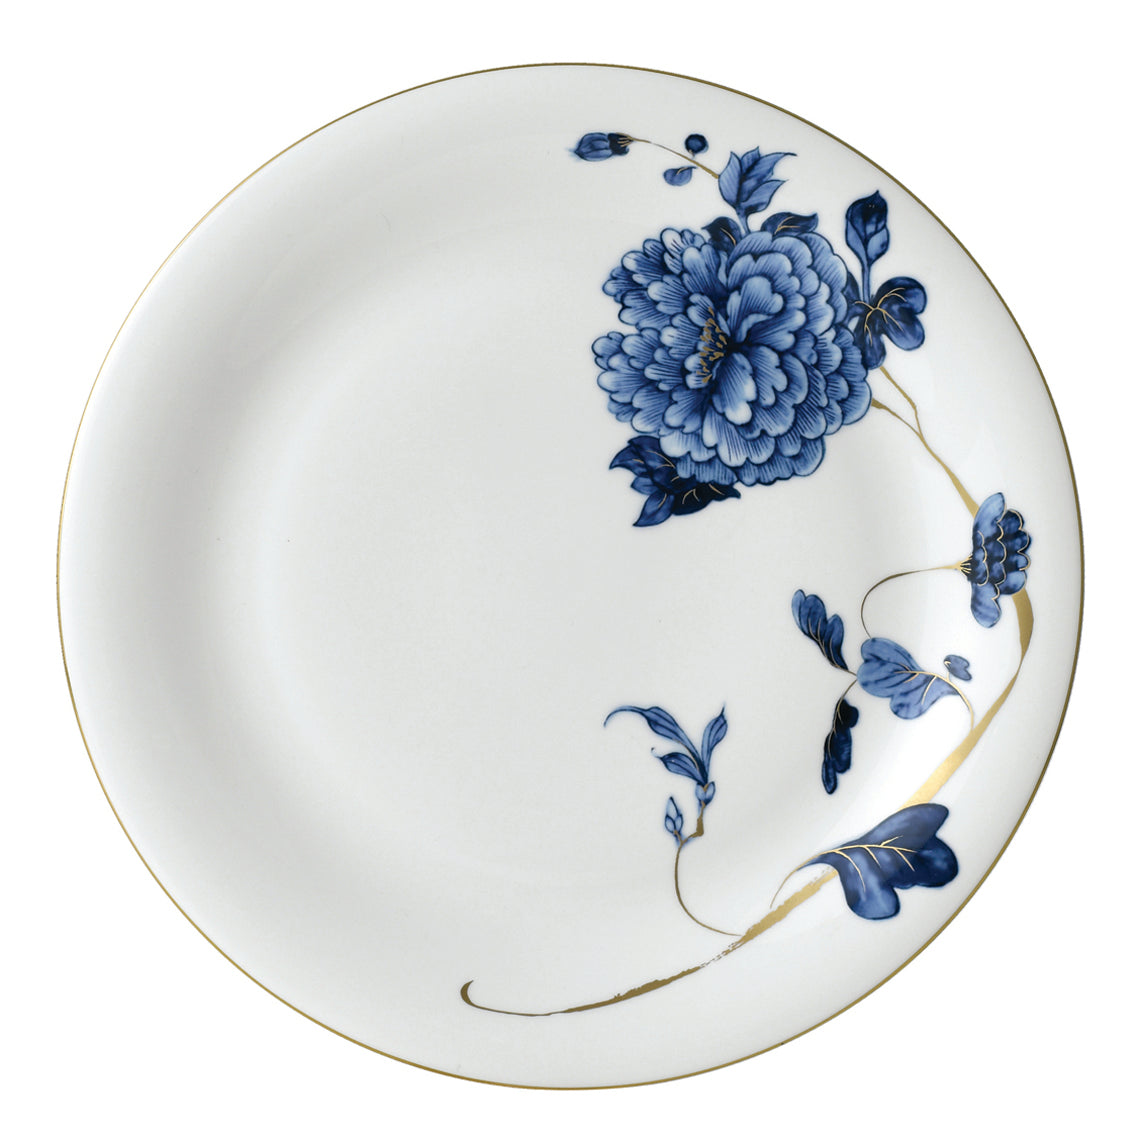 Emperor Flower Dinner Plate White Background Photo